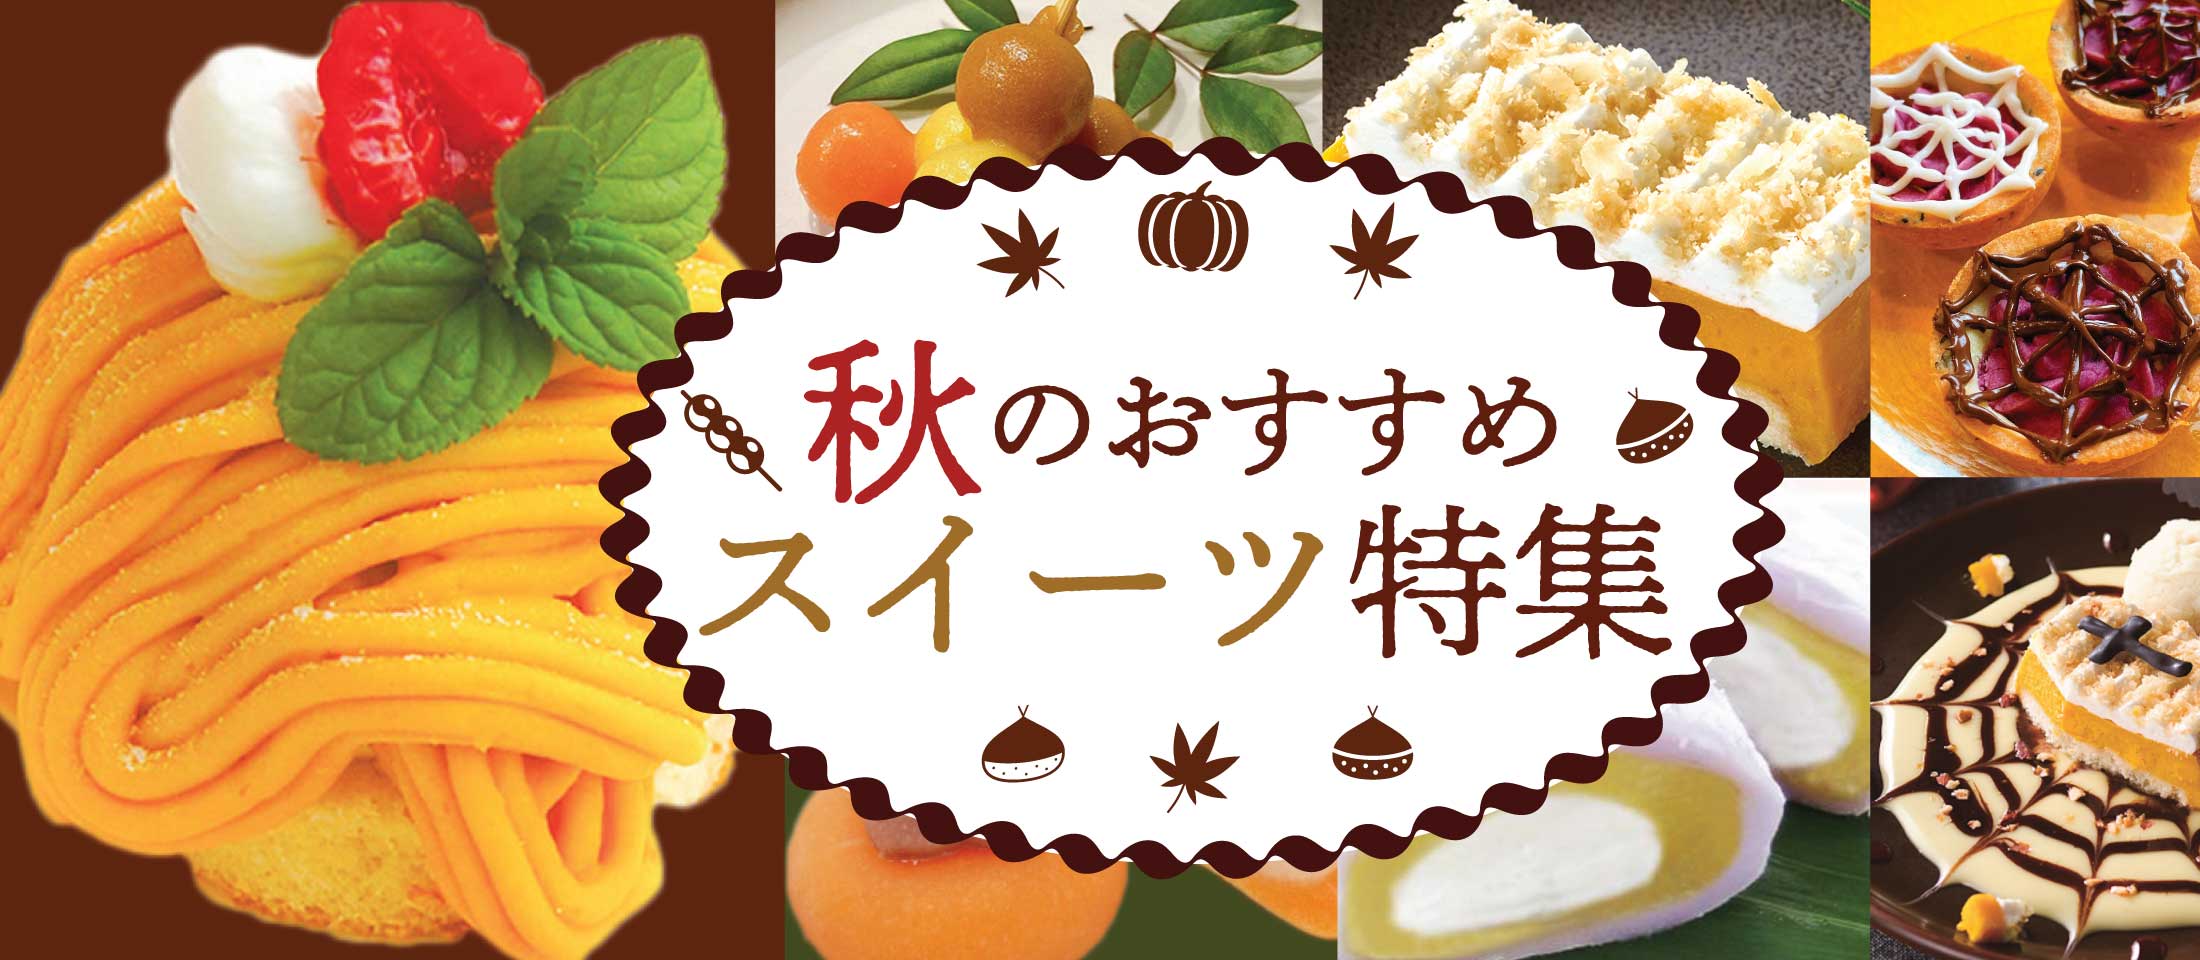 秋のおススメスイーツ特集 業務用食品・冷凍食品通販 ナカヤマフーズオンライン